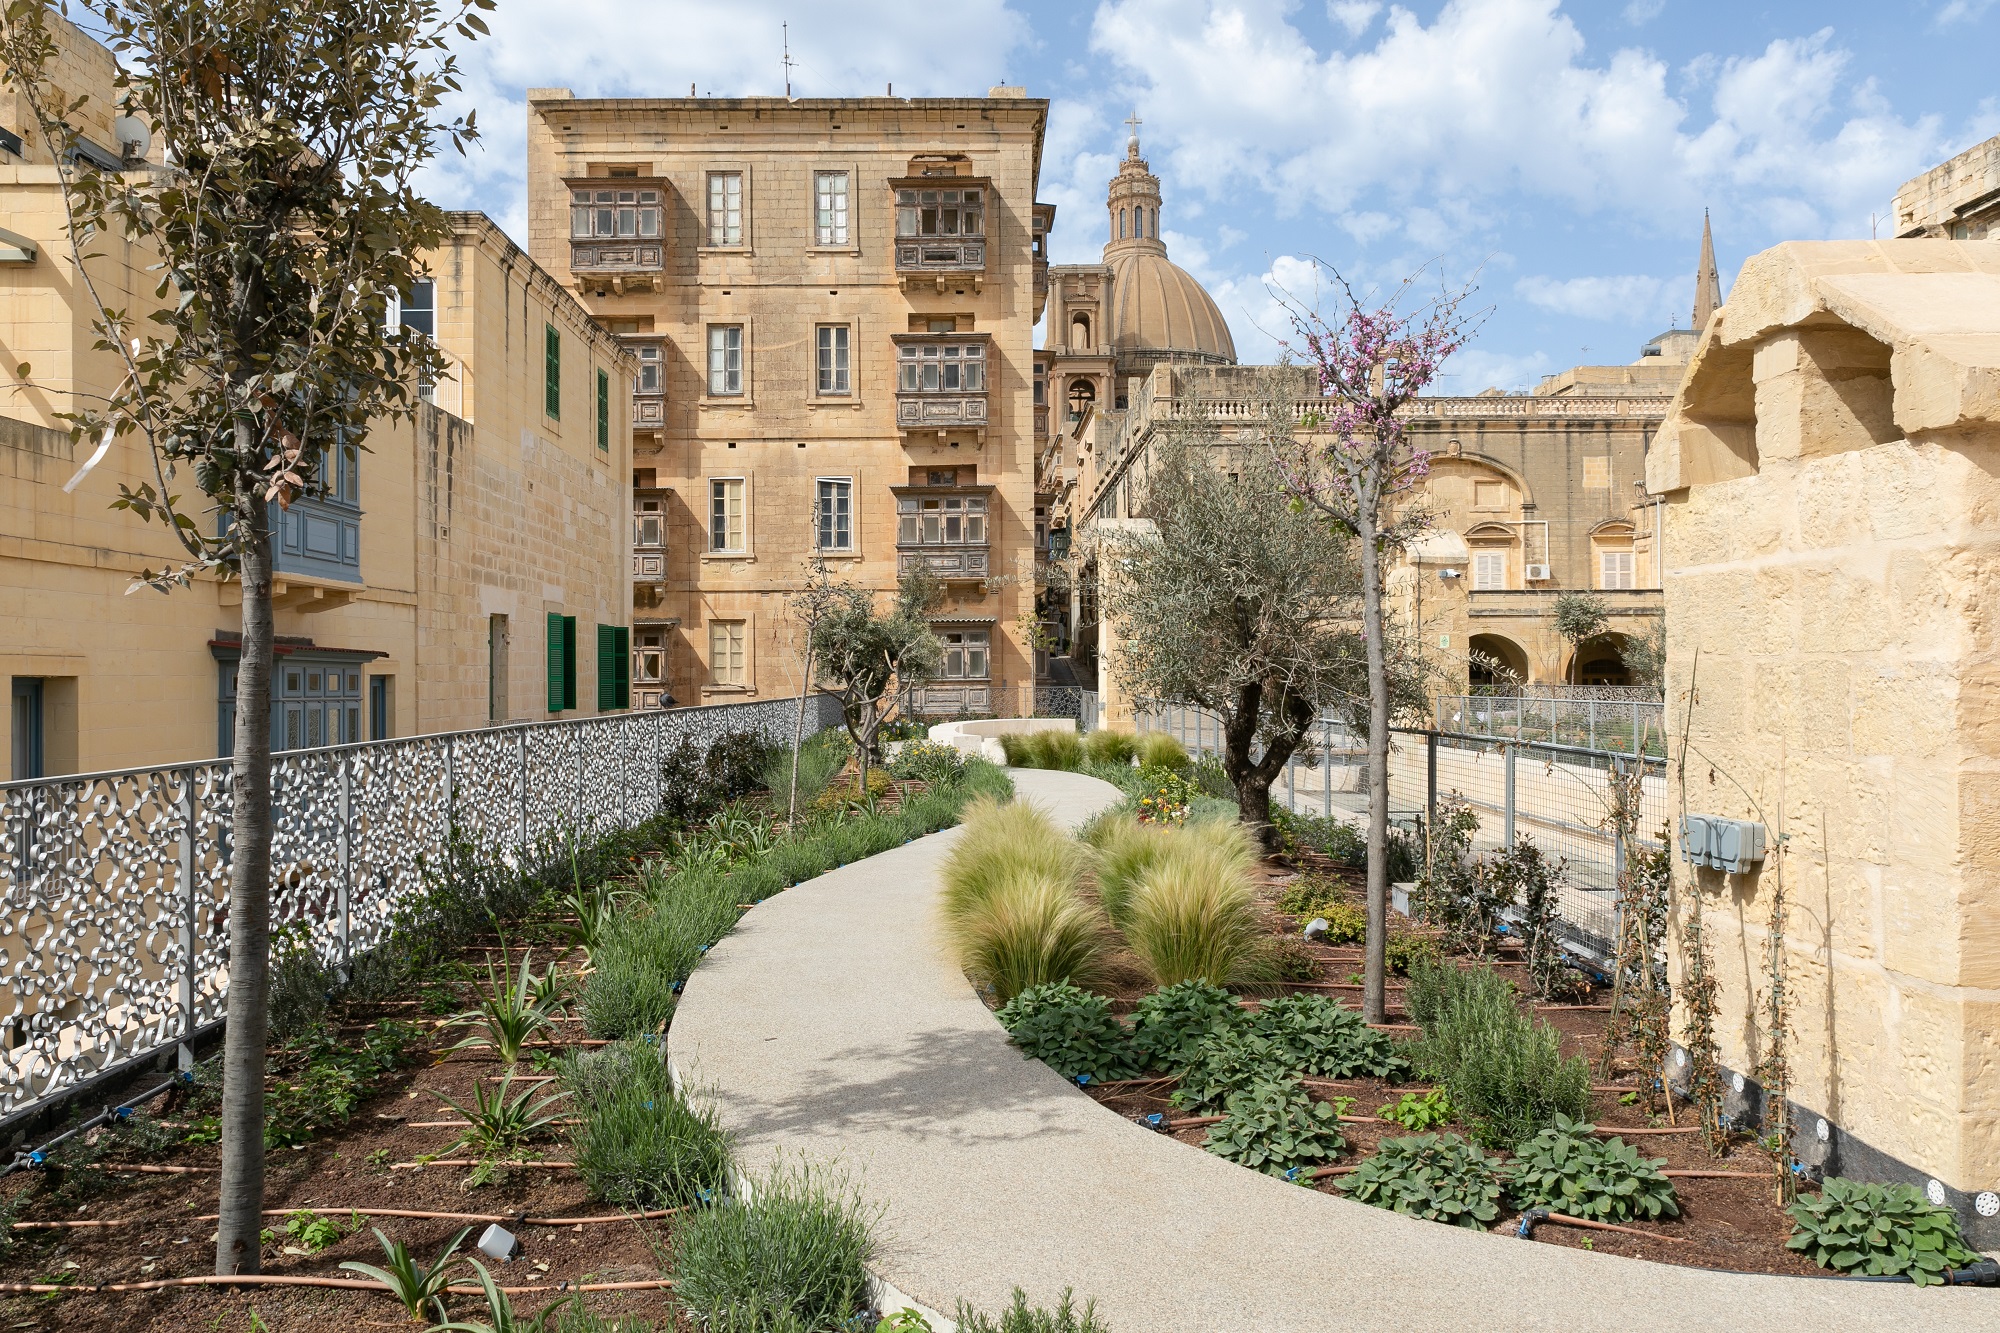 Urban greening in Valletta